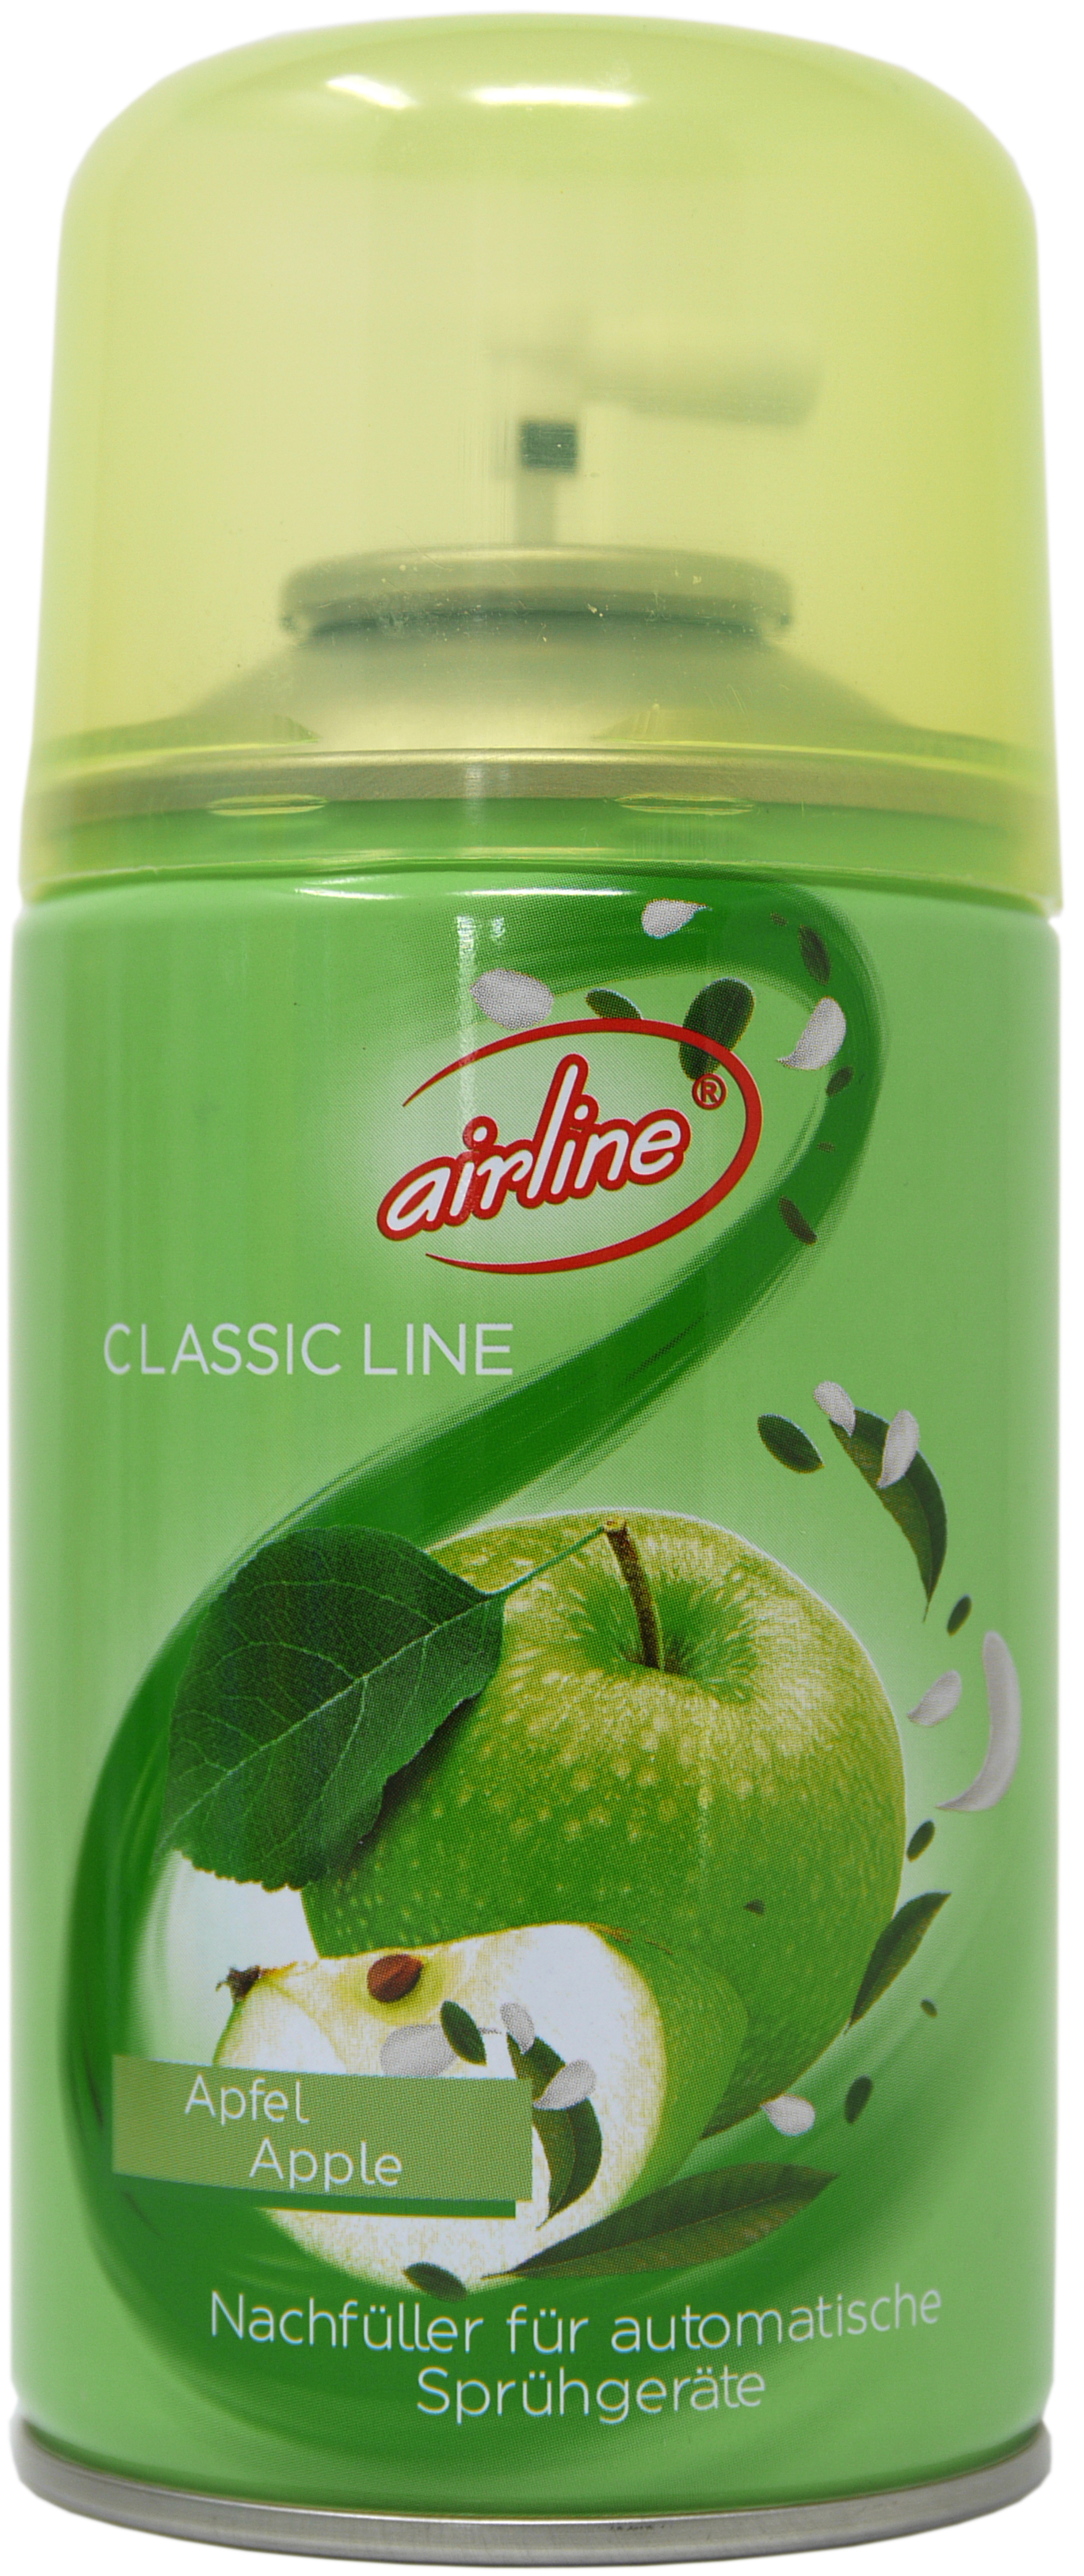 00507 - airline Classic Line Apfel Nachfüllkartusche 250 ml